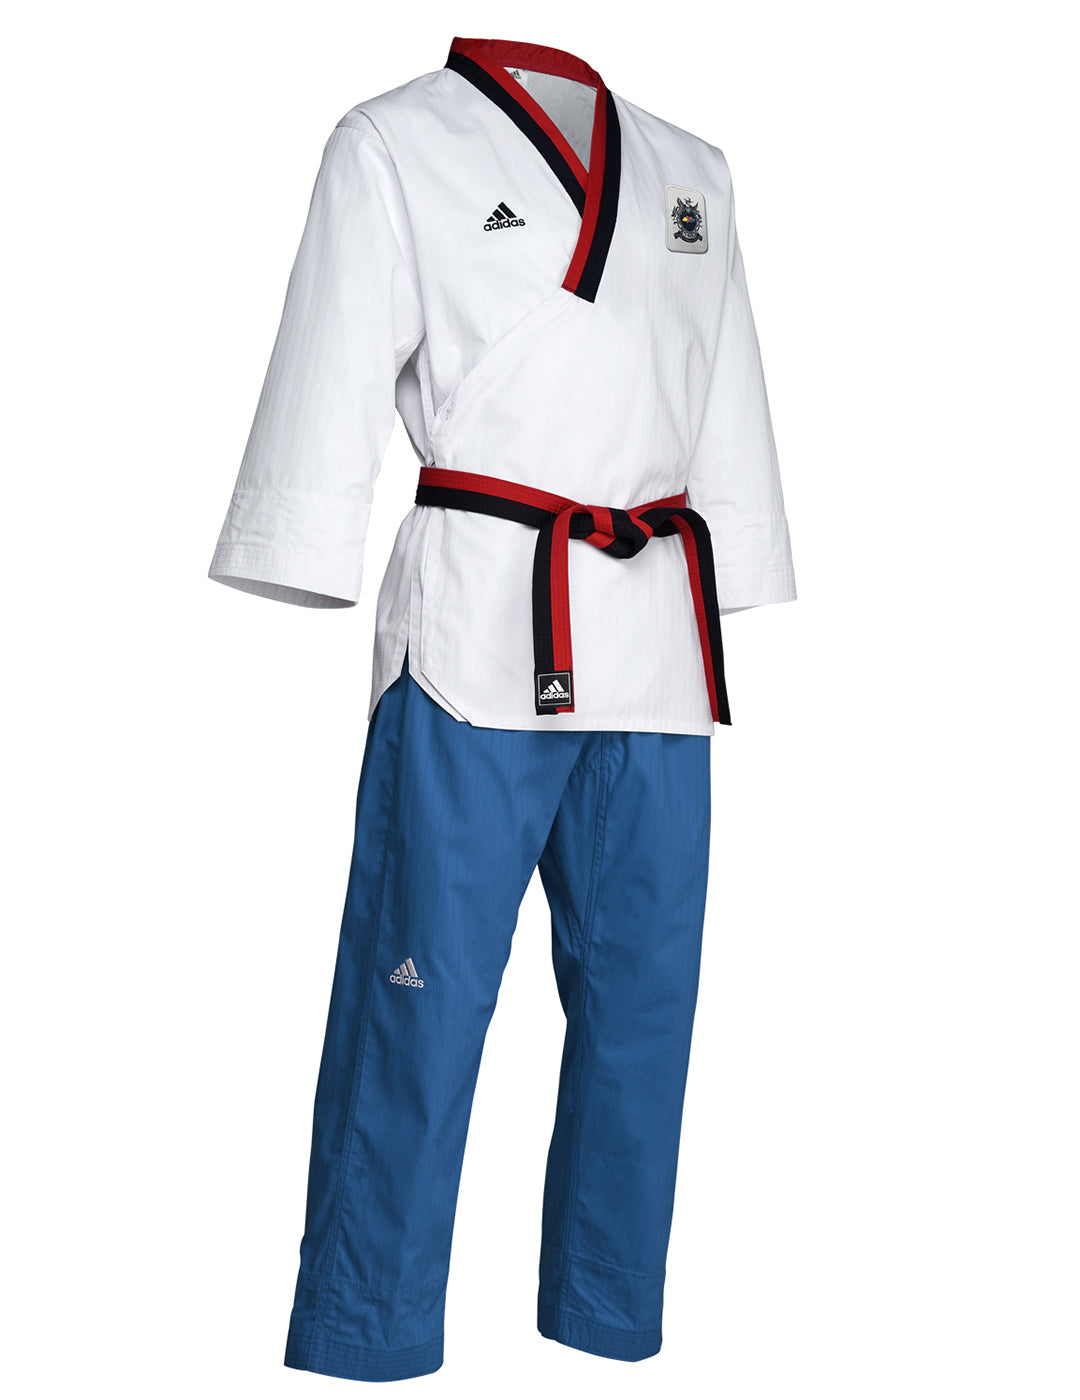 Inspeccionar por supuesto Reductor Adidas Poomsae Uniform Youth Male – All American Martial Arts Supply